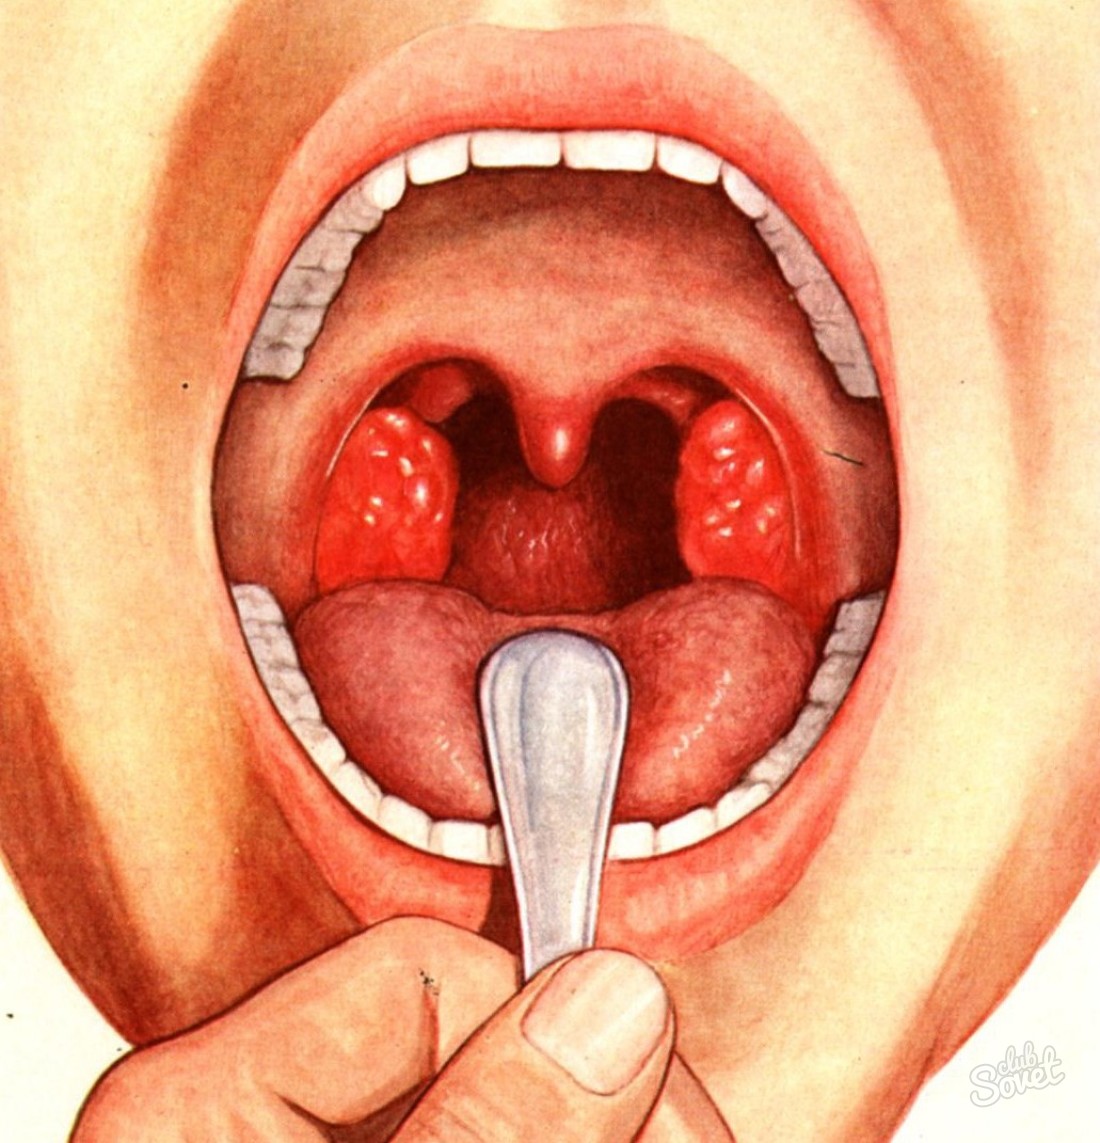 Gejala penyakit tonsilitis adalah